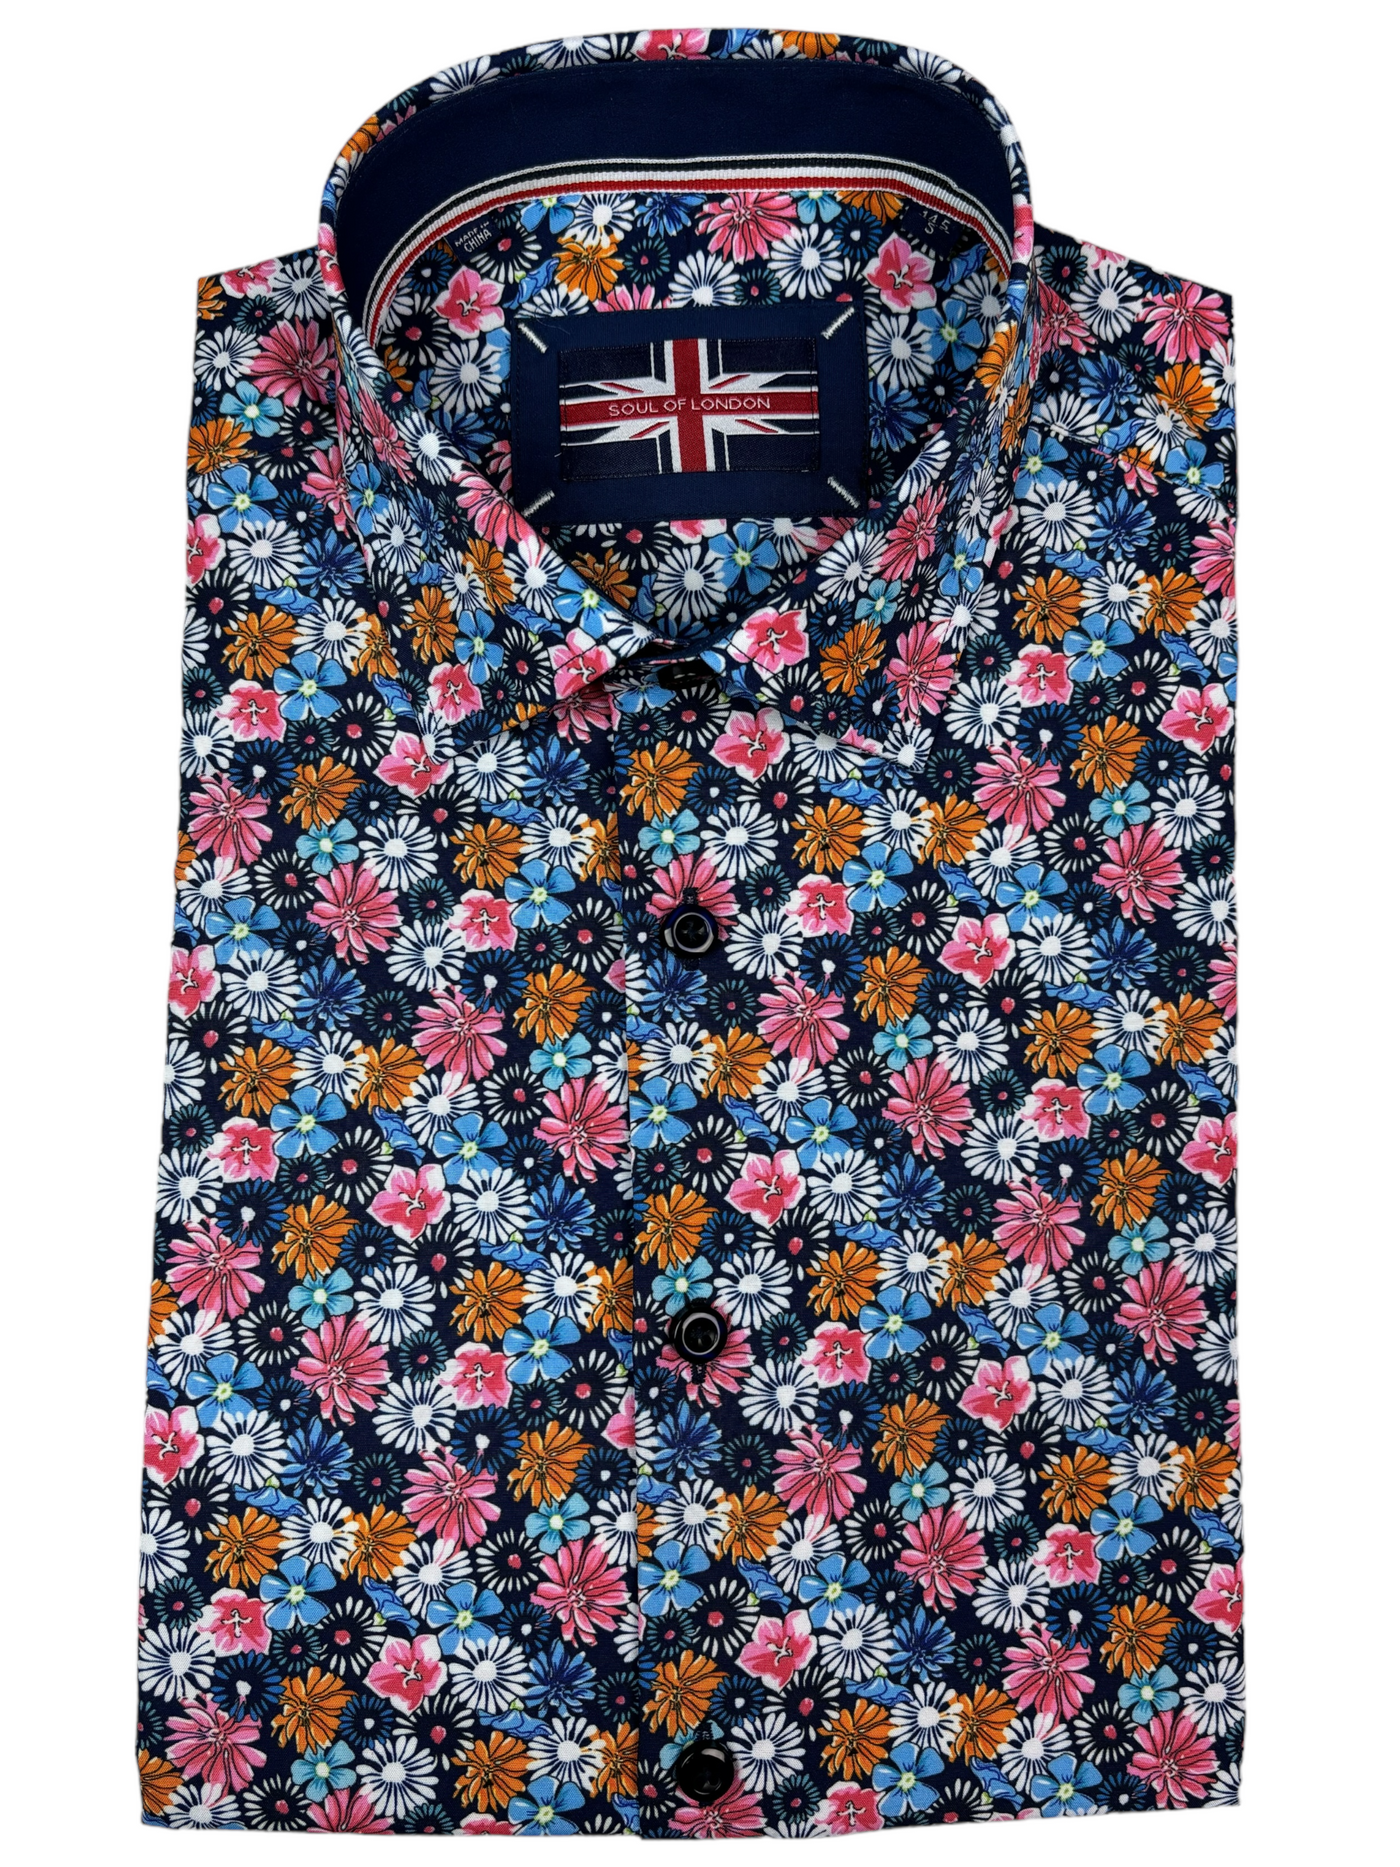 Chemise manches courtes performante extensible à motif floral